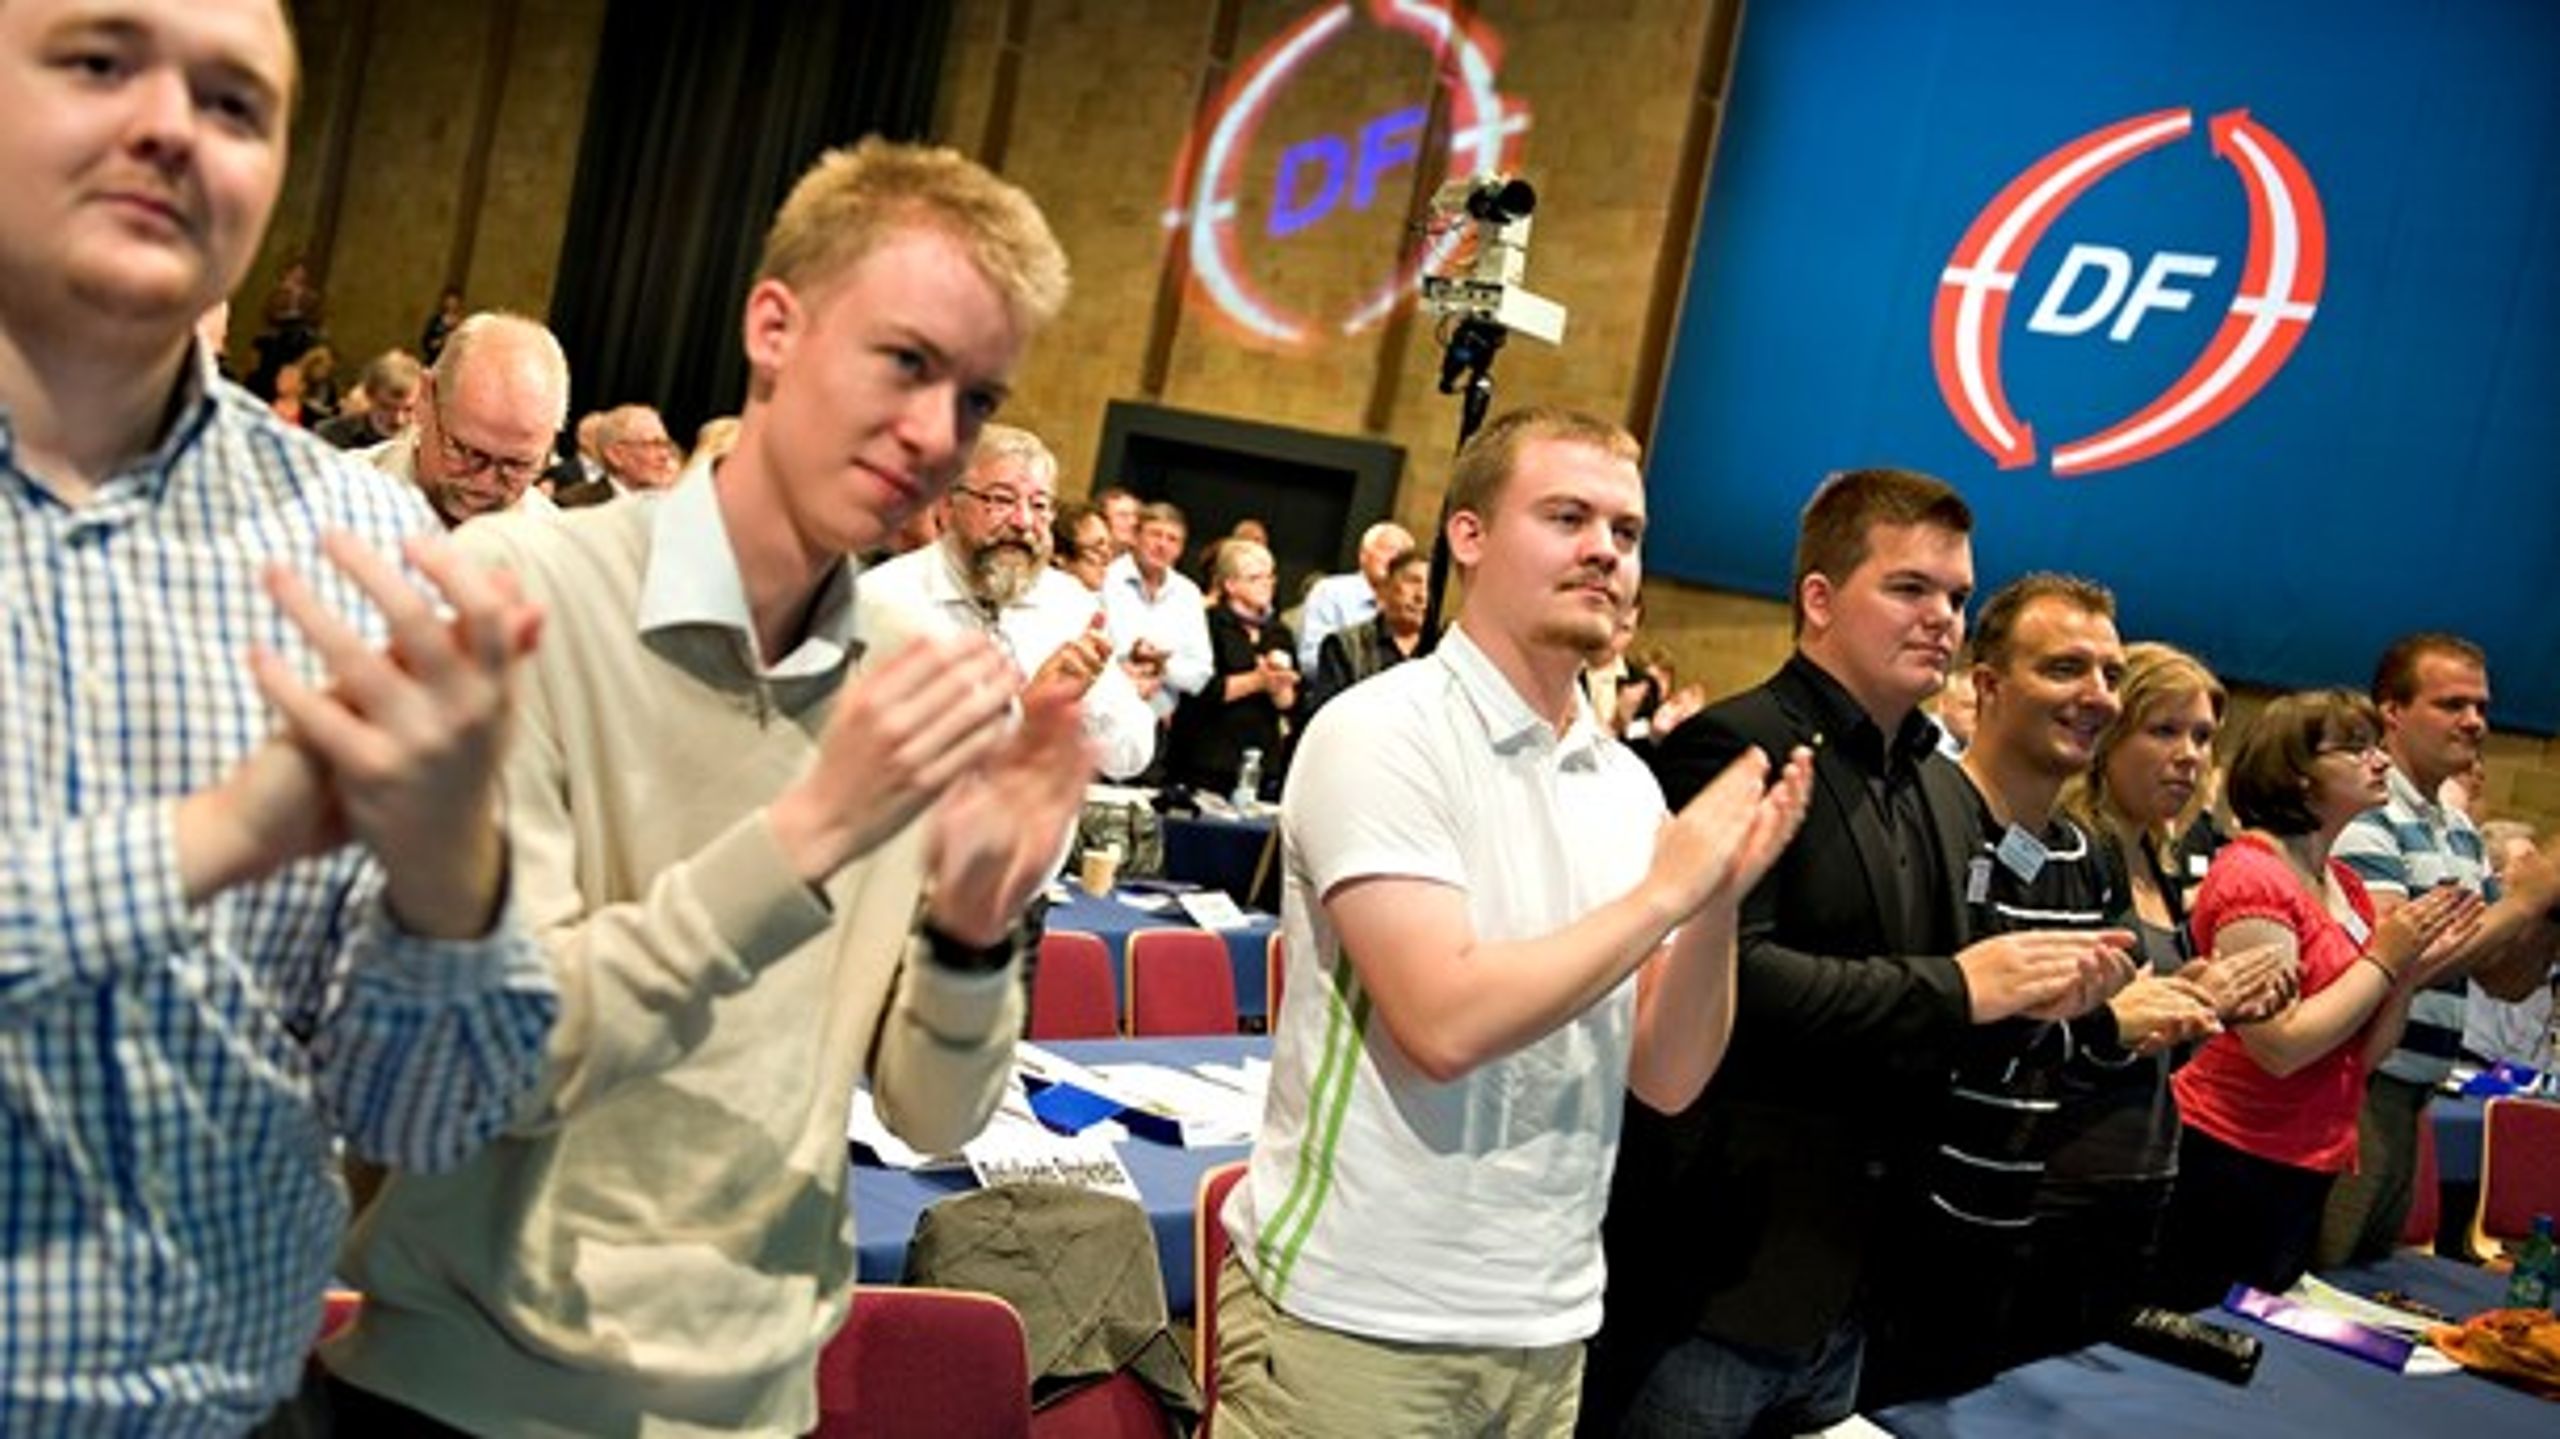 Delegerede ved Dansk Folkepartis landsmøde i 2009. Belaster de samfundet mere end ikke-vestlige indvandrere?